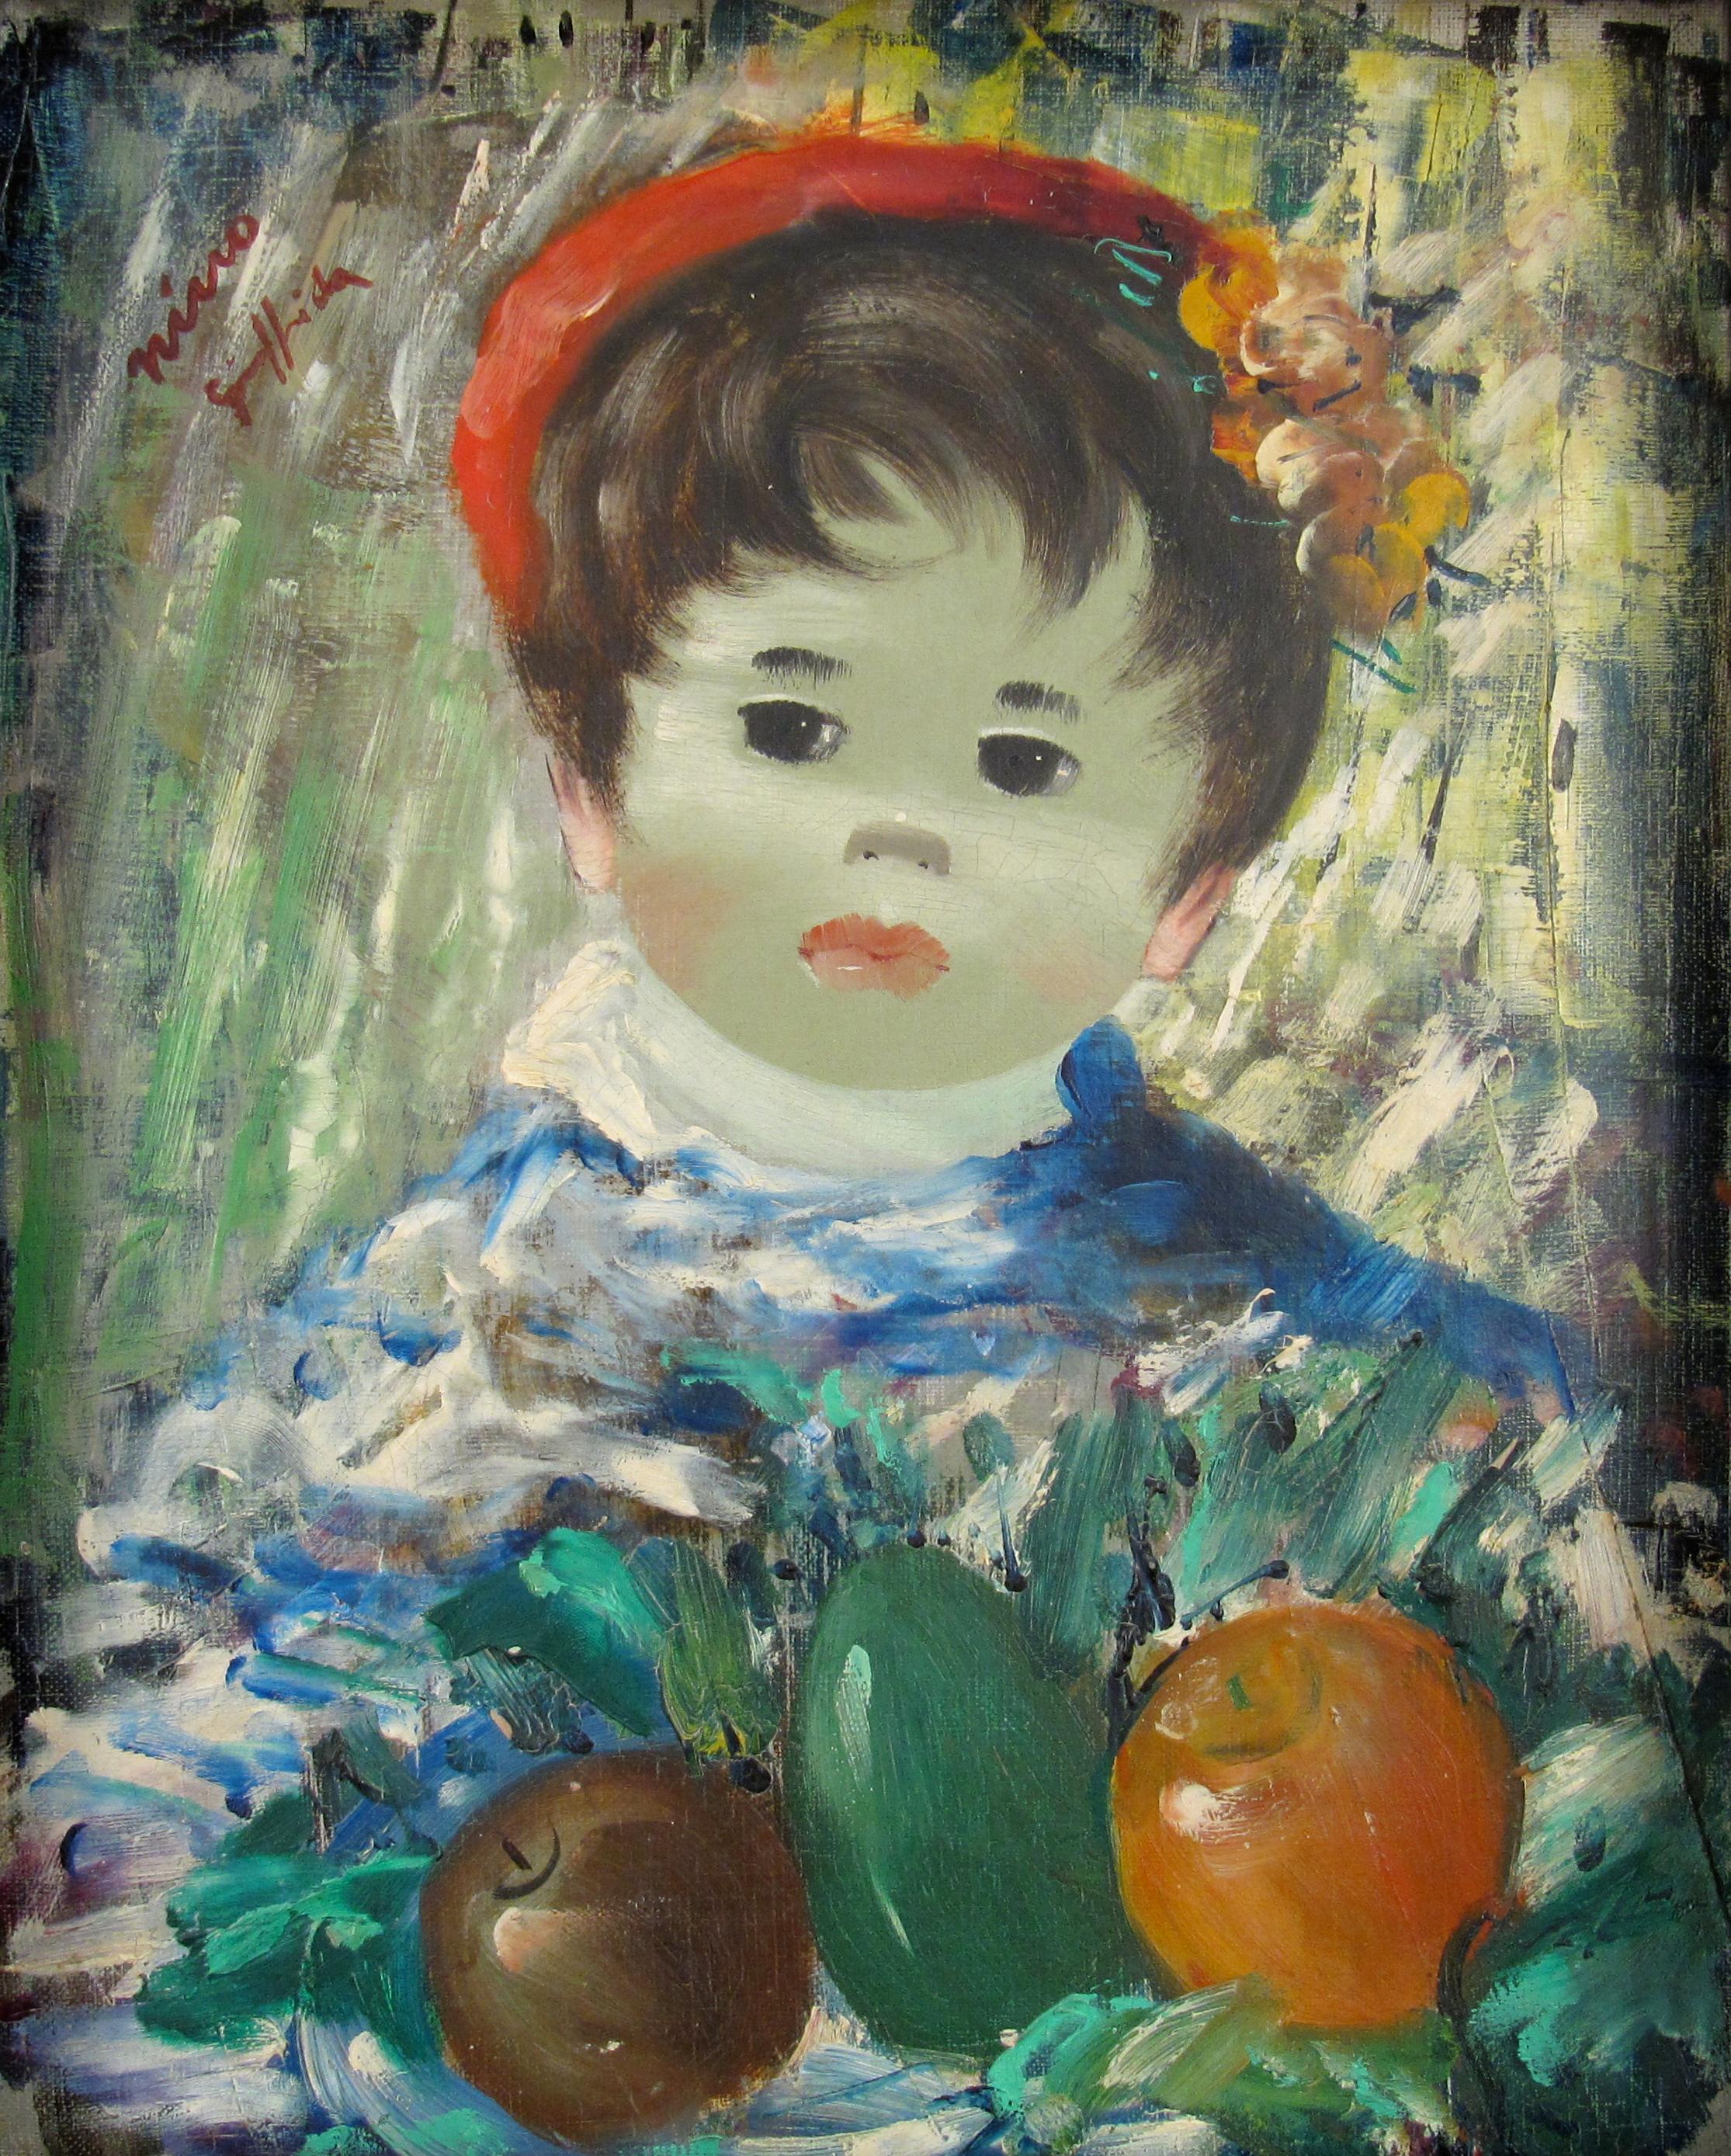 Garçon avec des Fruit - Boy with Fruit - Huile sur toile - Peinture naïve - Painting de Nino Giuffrida